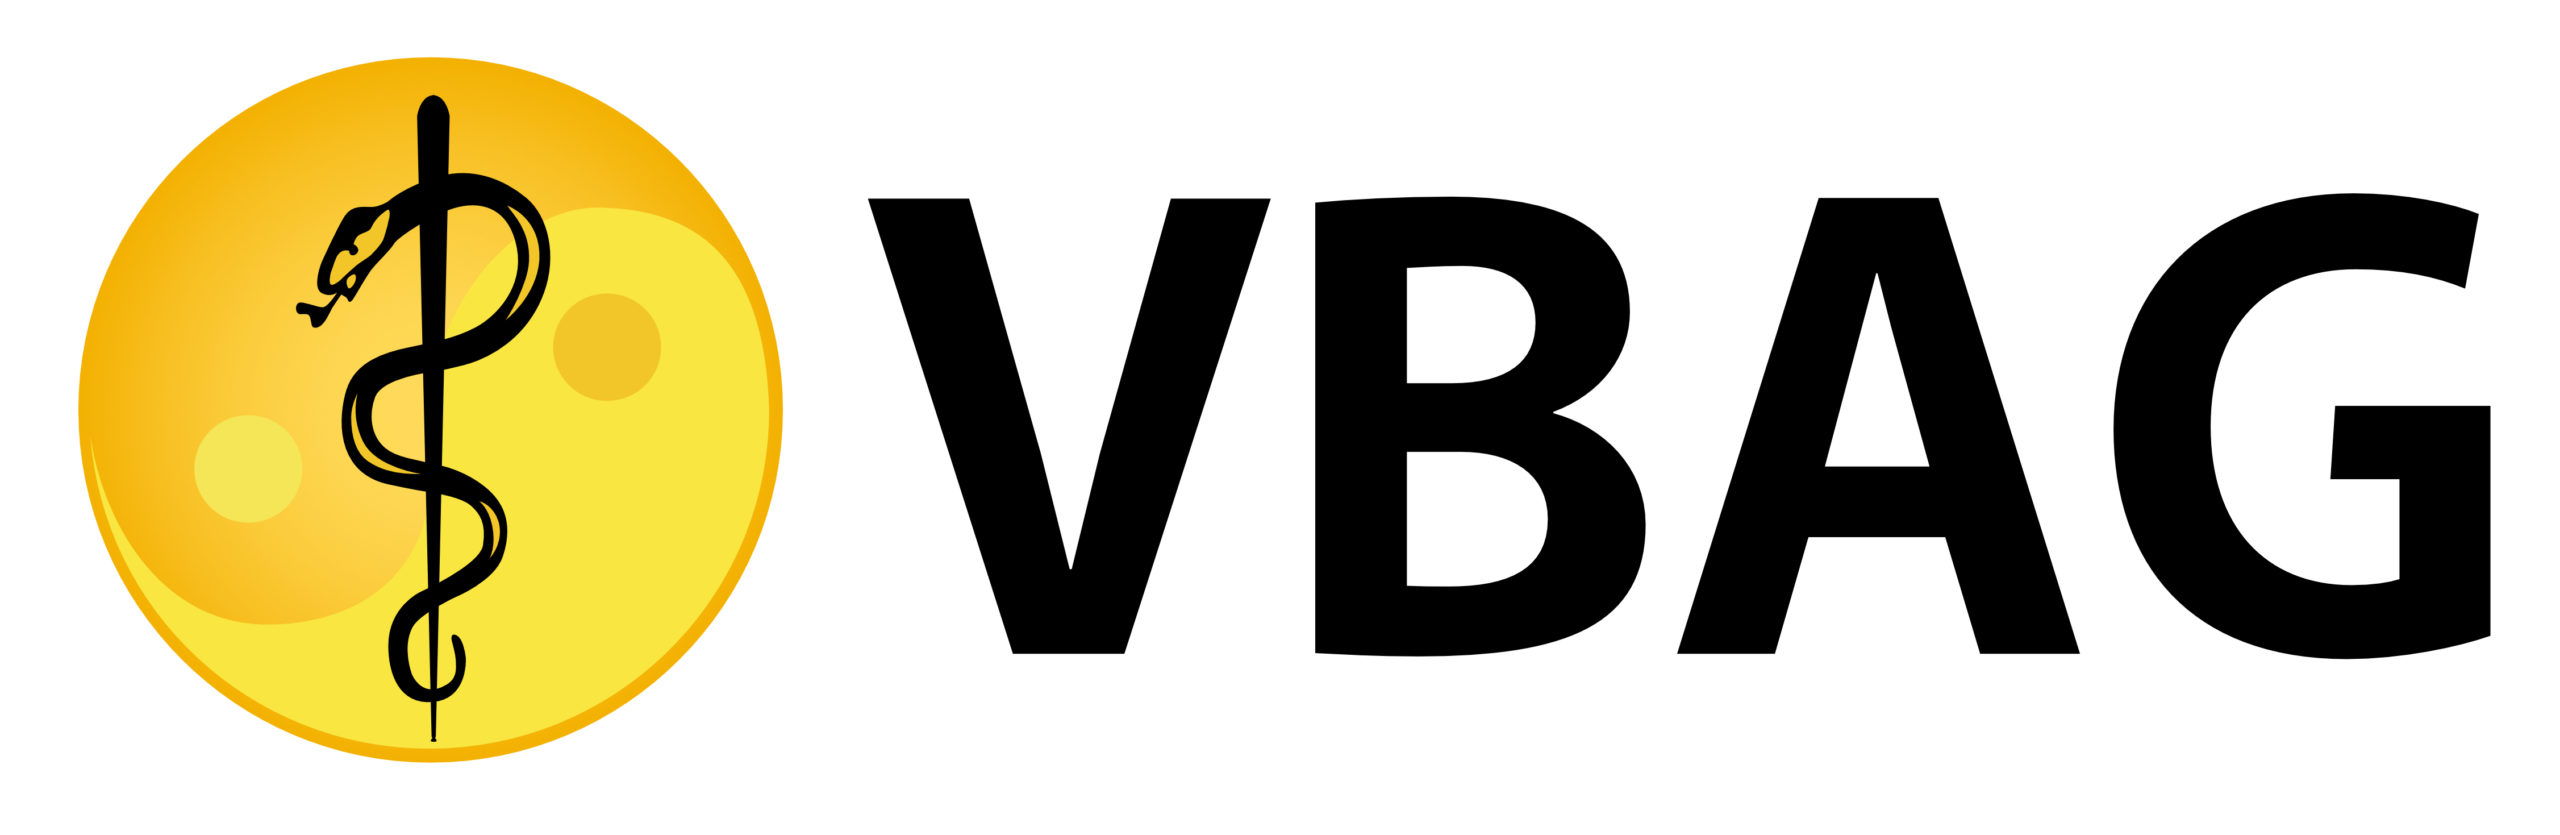 VBAG_logo_zwarte_letters